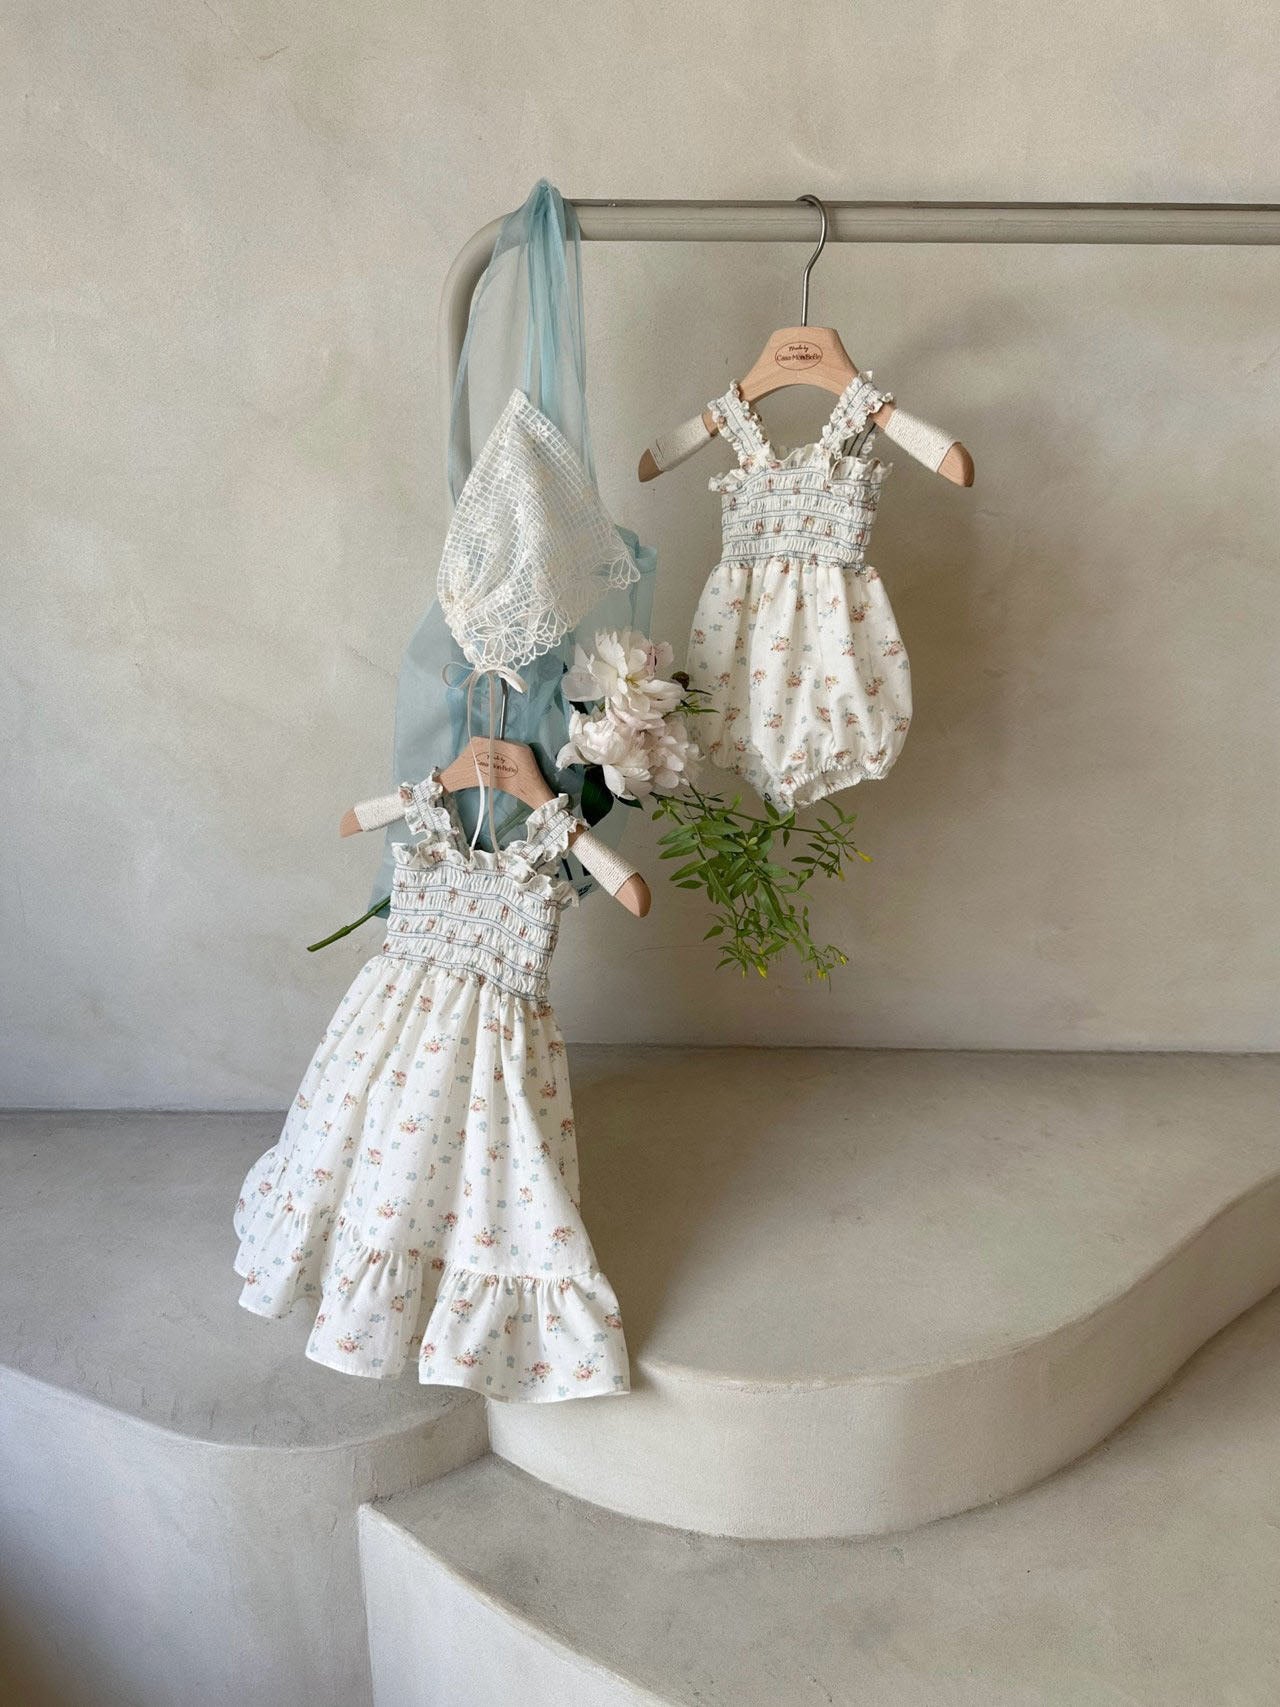 Toddler Monbebe Floral Smocked Bodice Blue Stitch Dress (1-6y) - Floral Ivory